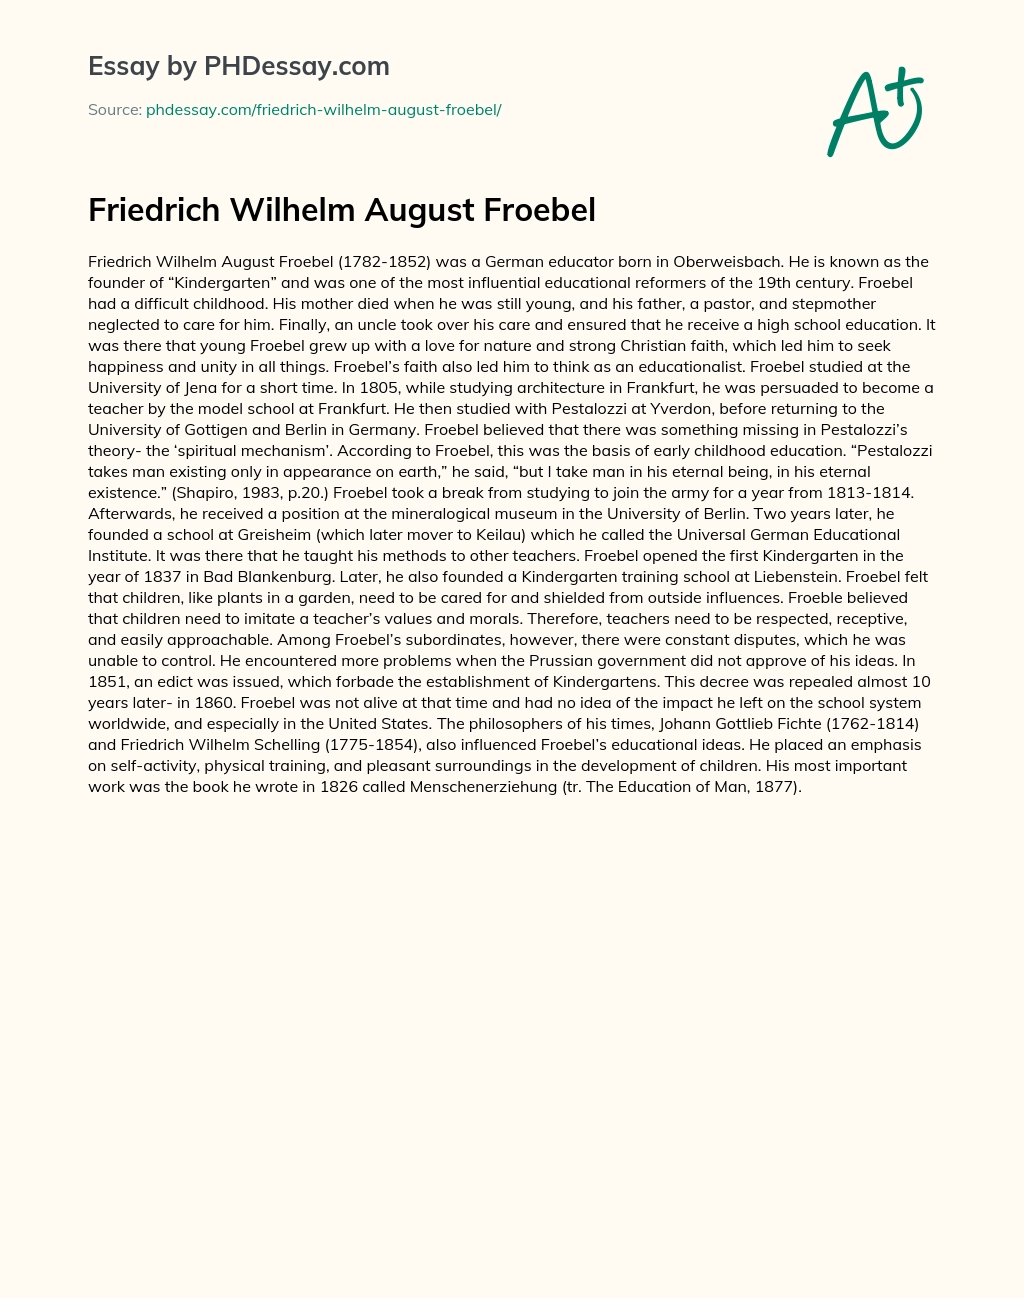 Friedrich Wilhelm August Froebel essay